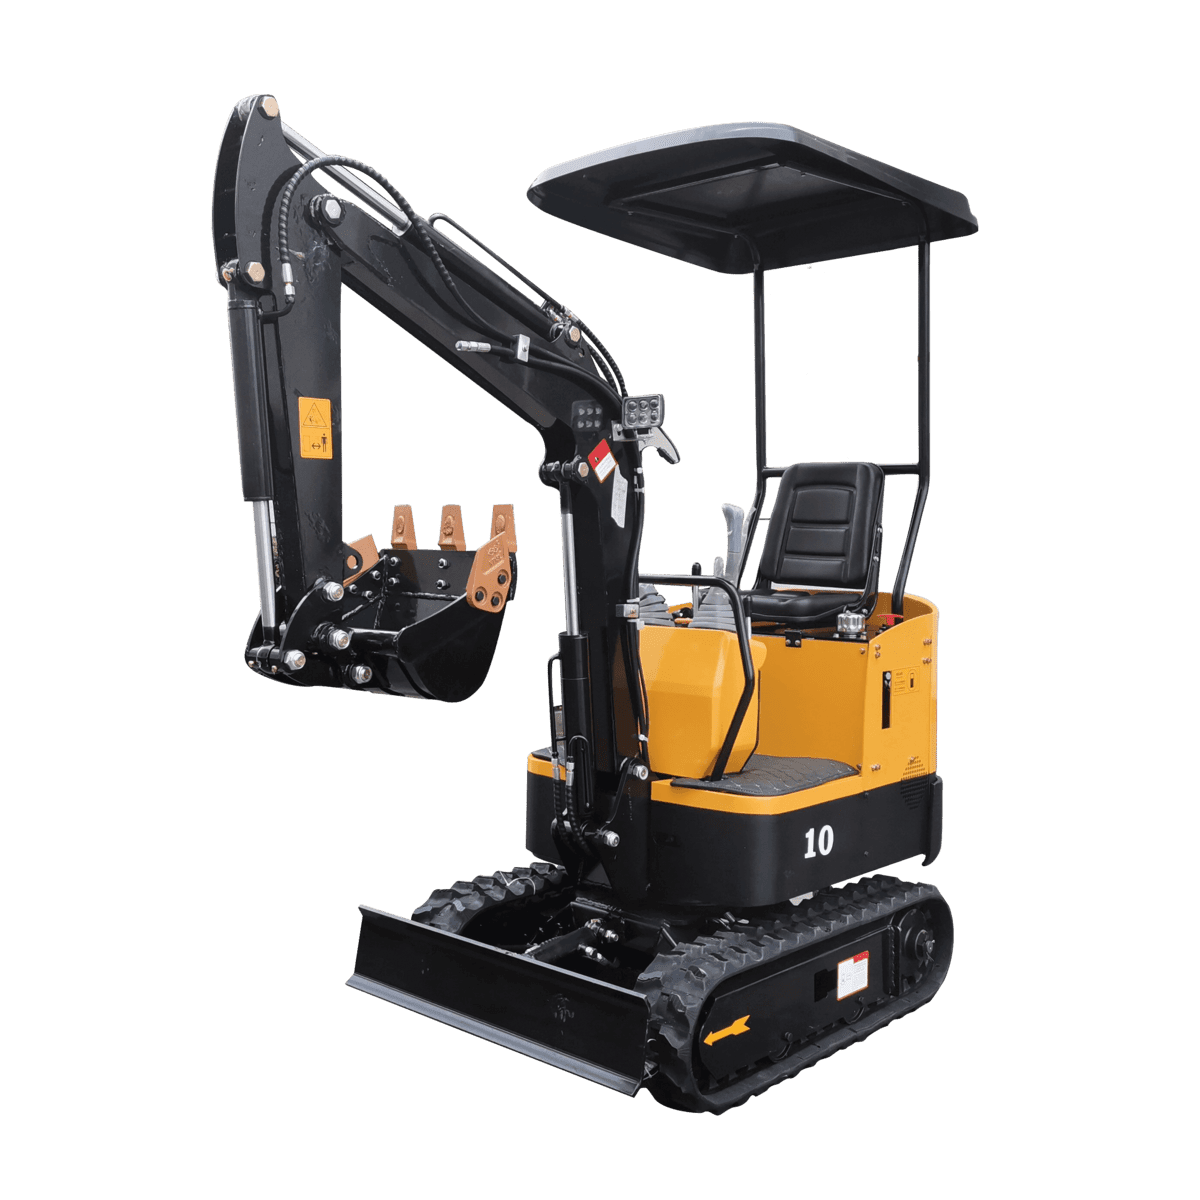 HX10 1 ton digger mini excavator